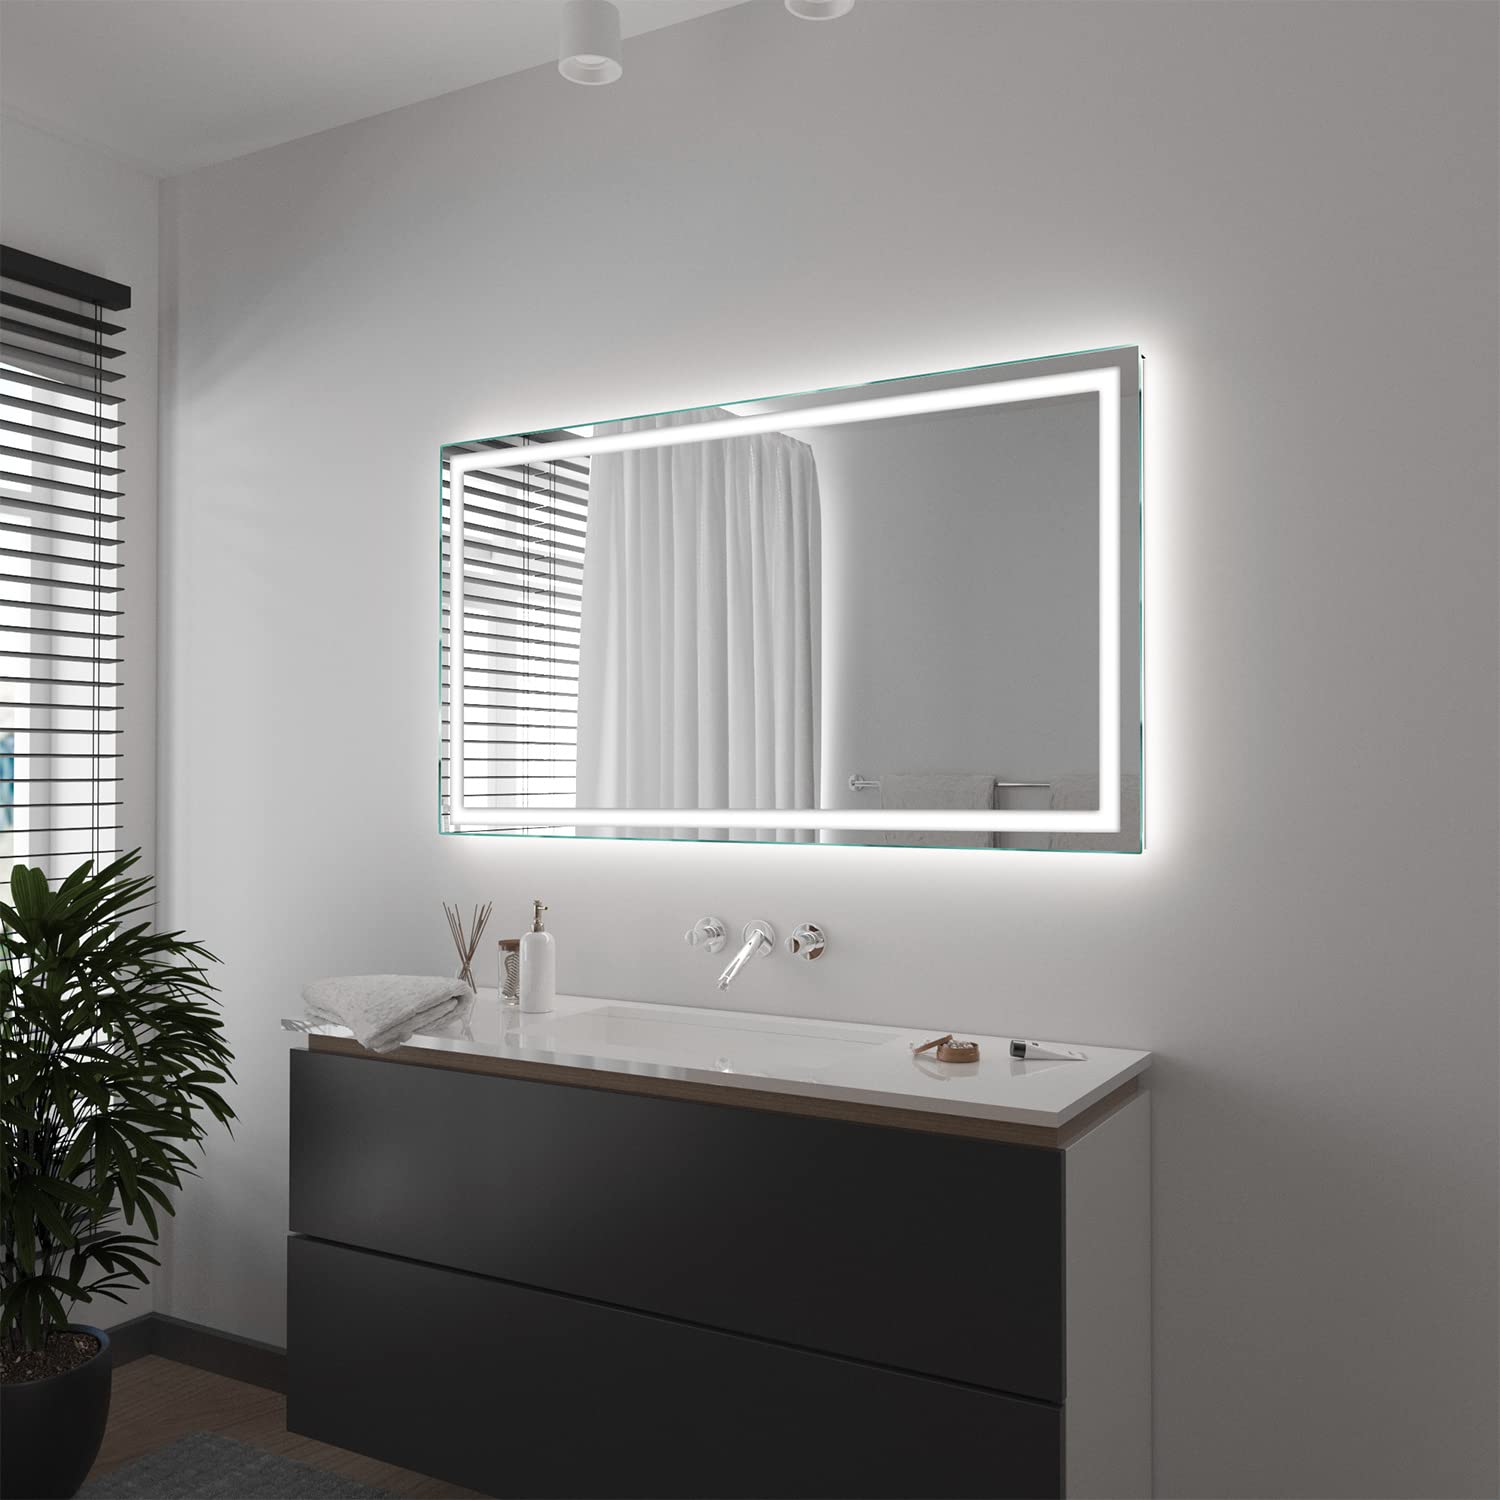 SARAR Wandspiegel mit rundum LED-Beleuchtung 190x70 cm Made in Germany Toulon eckiger Badspiegel Spiegel mit Beleuchtung Badezimmerspiegel